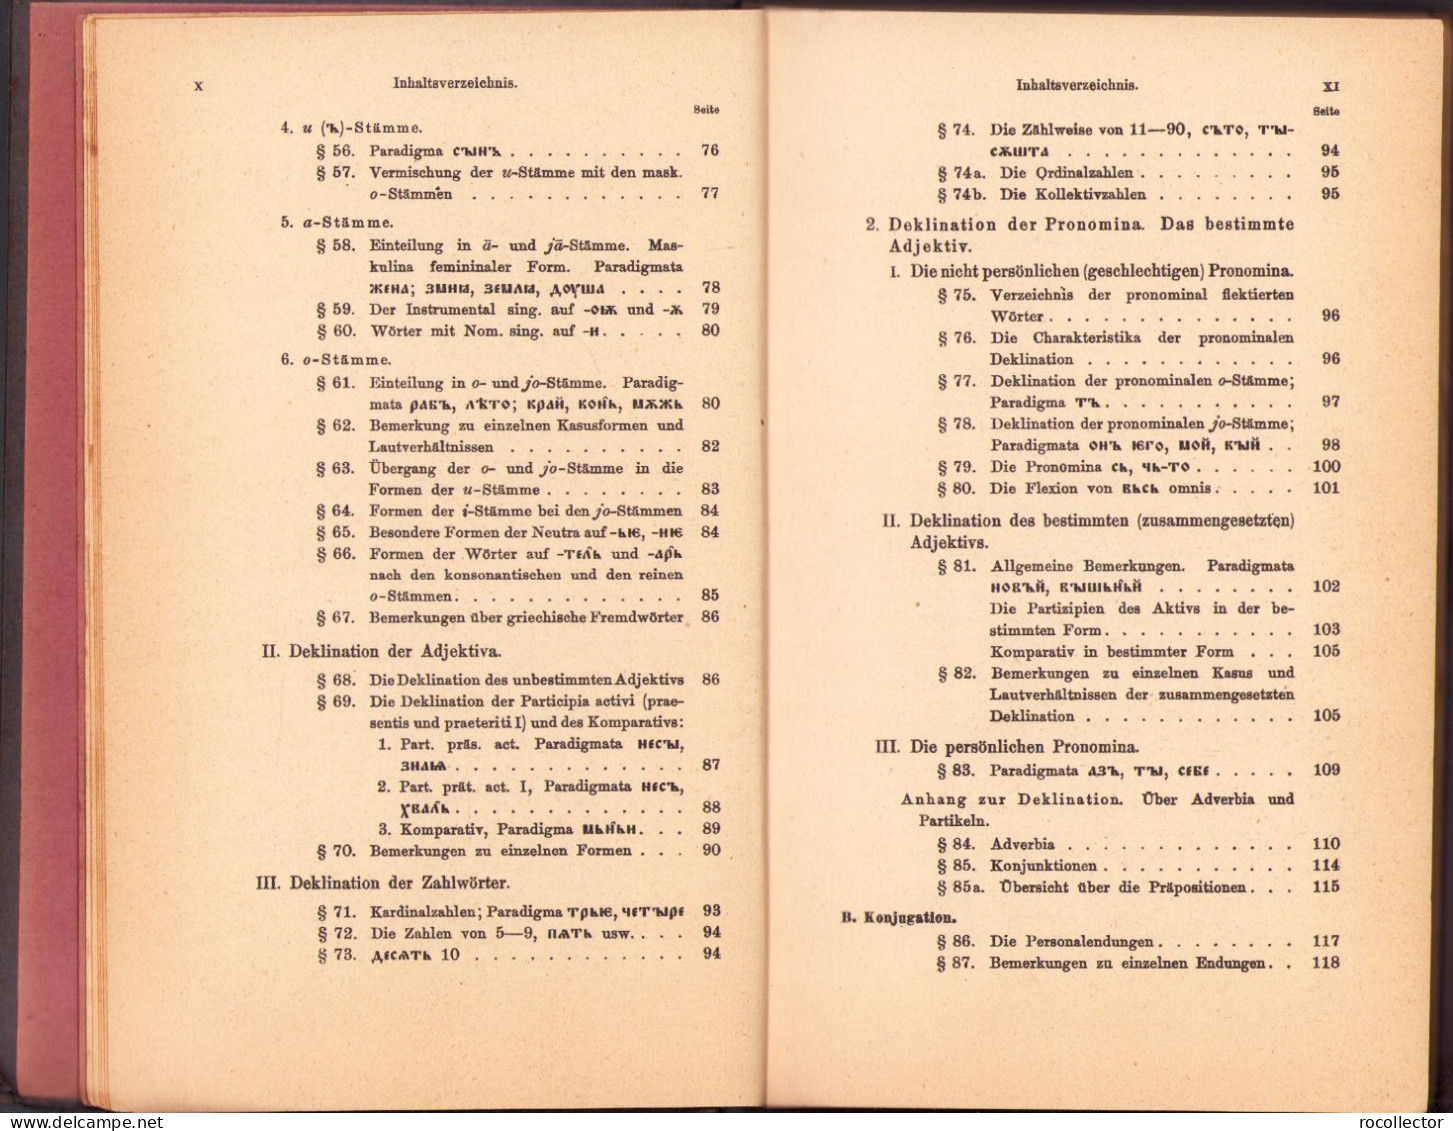 Handbuch Der Altbulgarischen (Altkirchenslavischen). Grammatik. Texte. Glossar Von A Leskien 1922 Heidelberg C1524 - Old Books